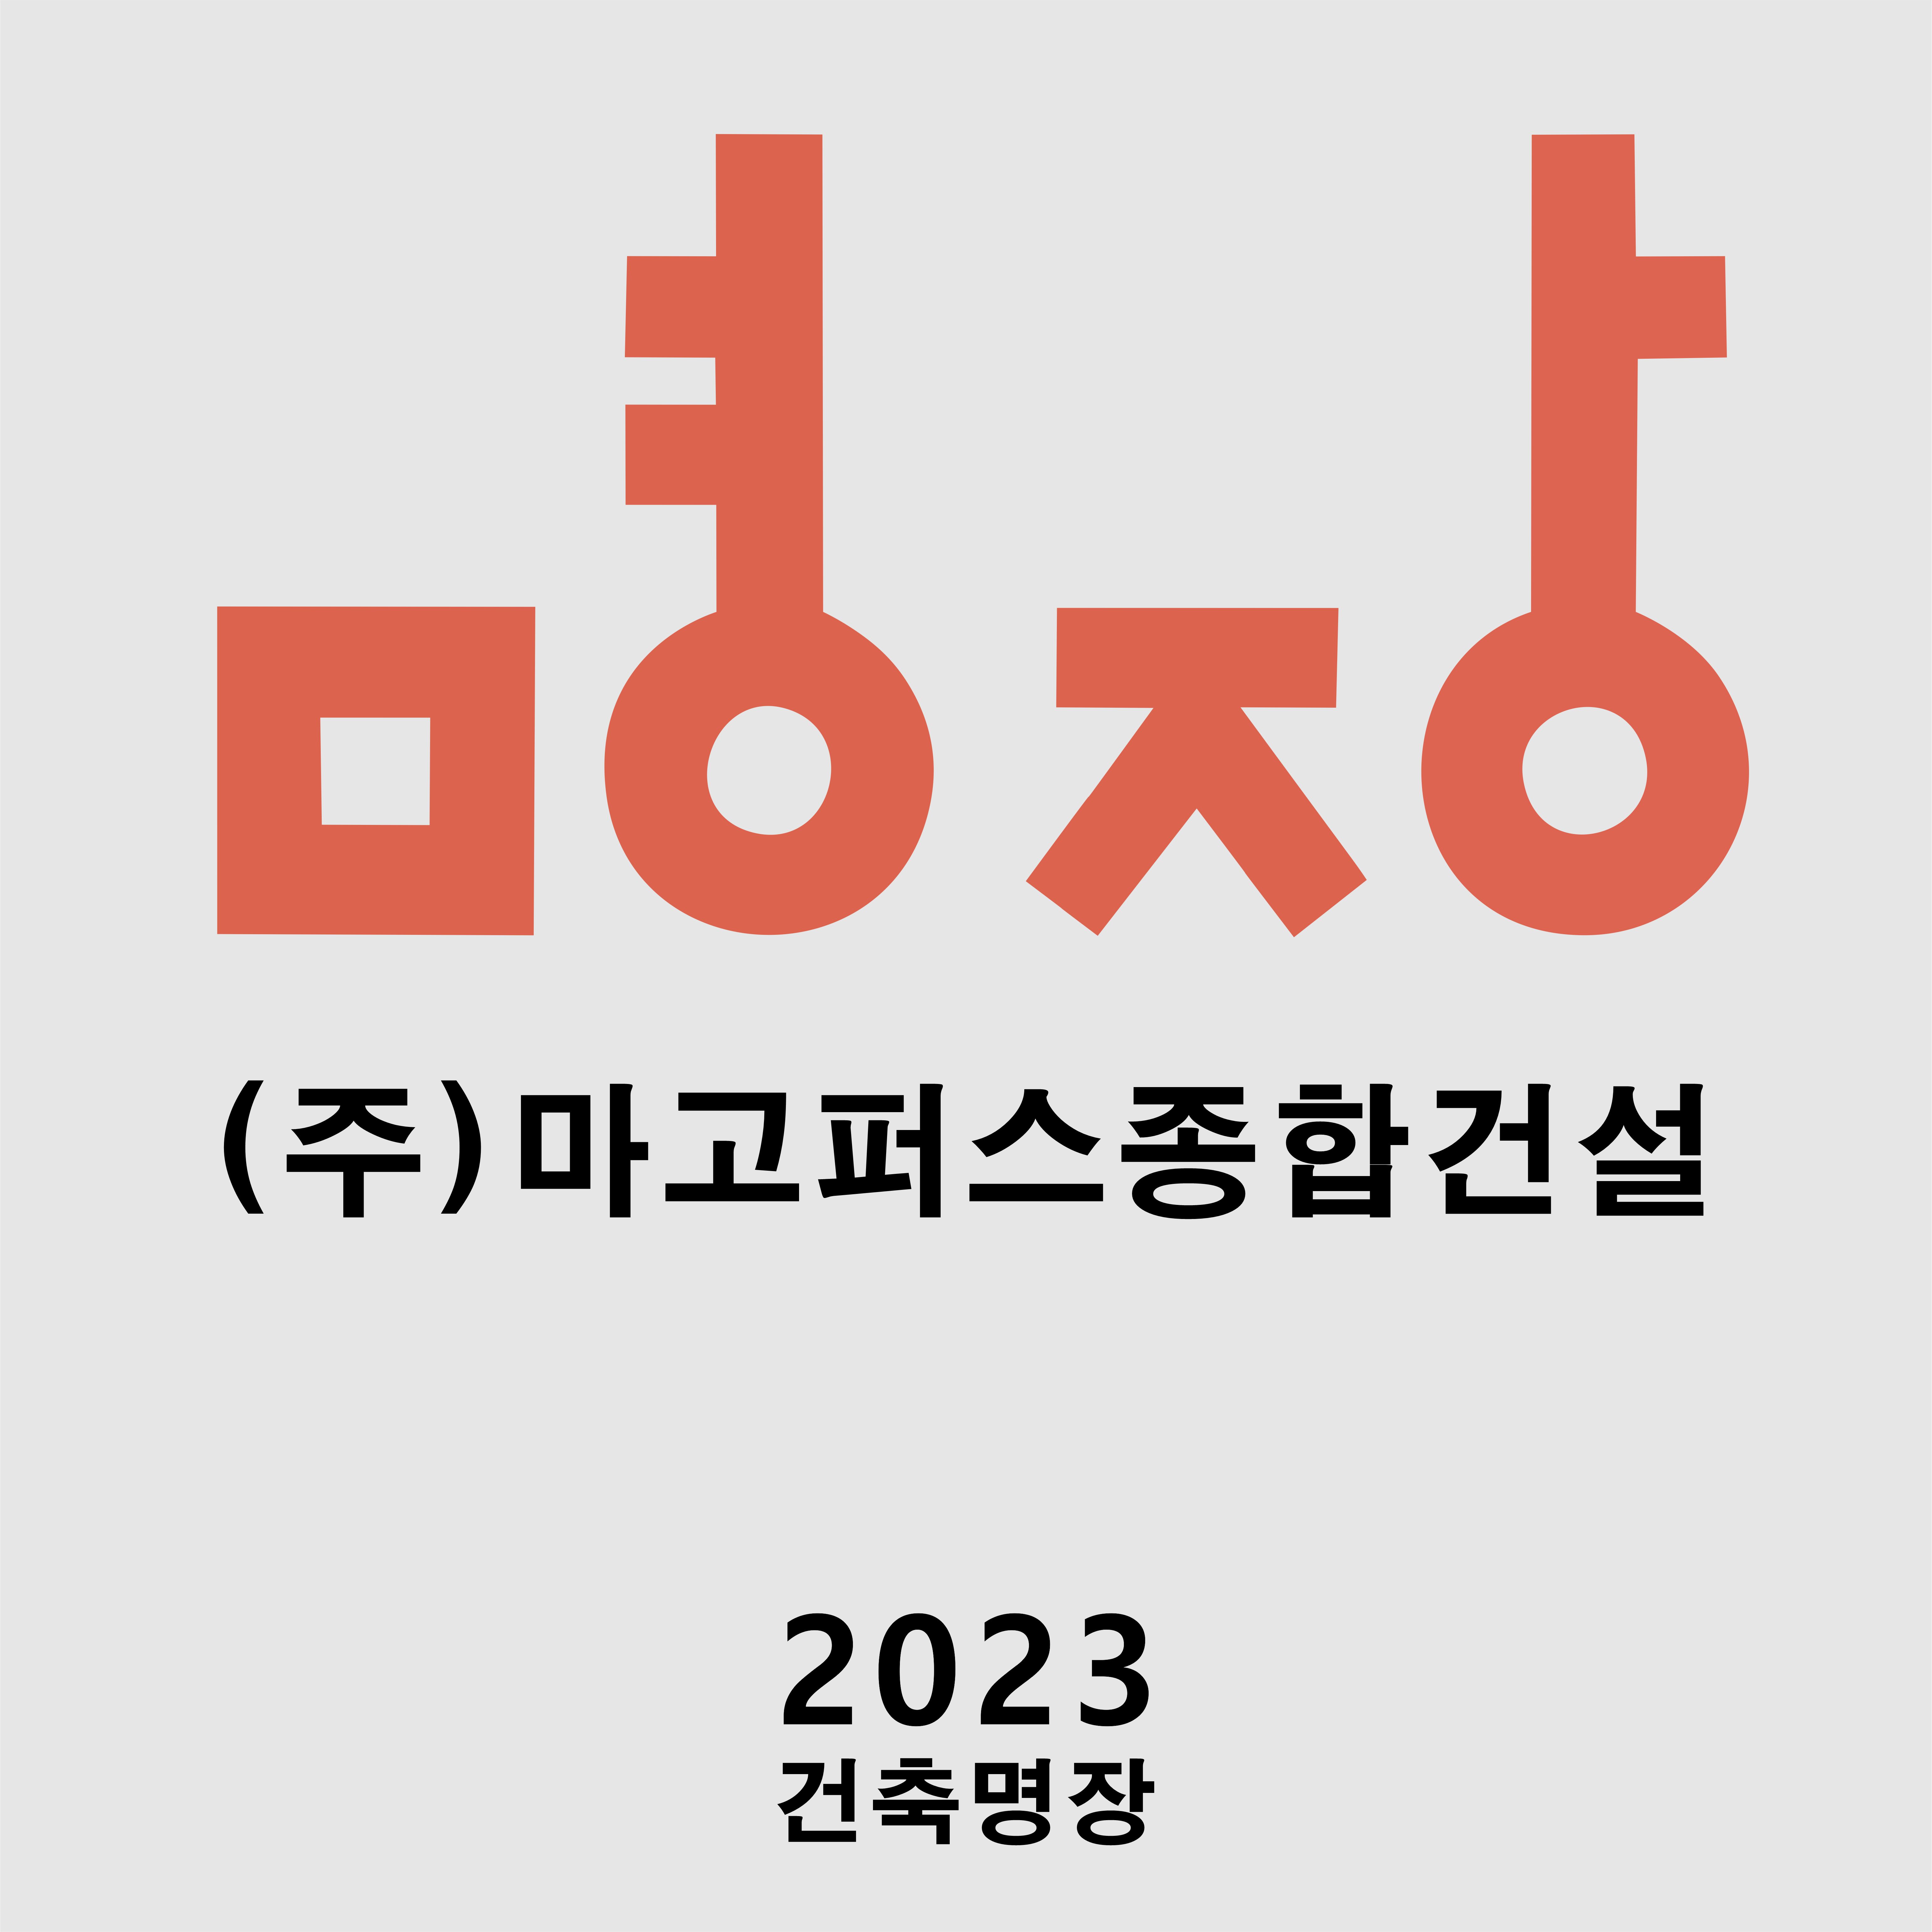 2023_마고퍼스 건축명장_2회 연속수상!